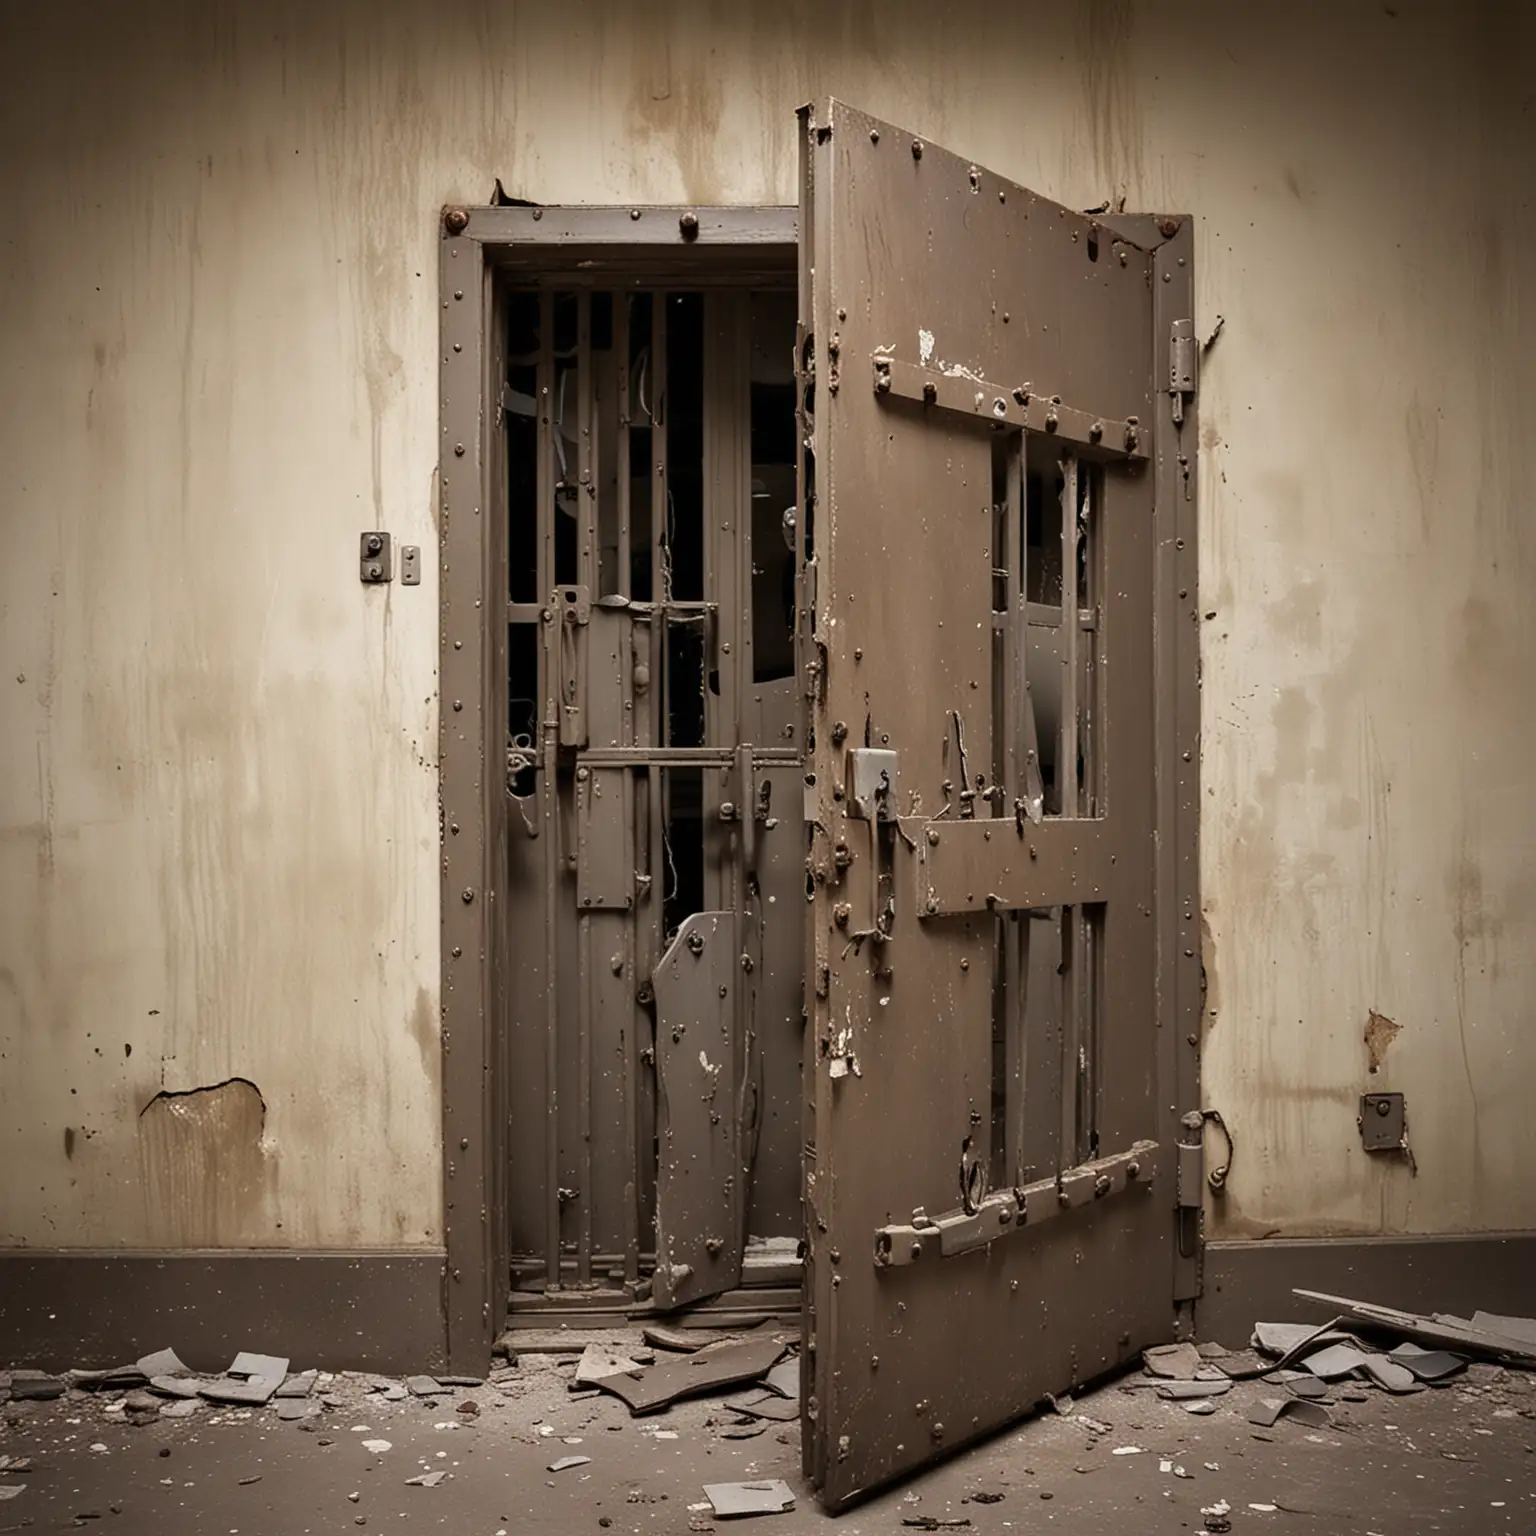 Broken Jail Cell Door Steel Door Ripped from Hinges